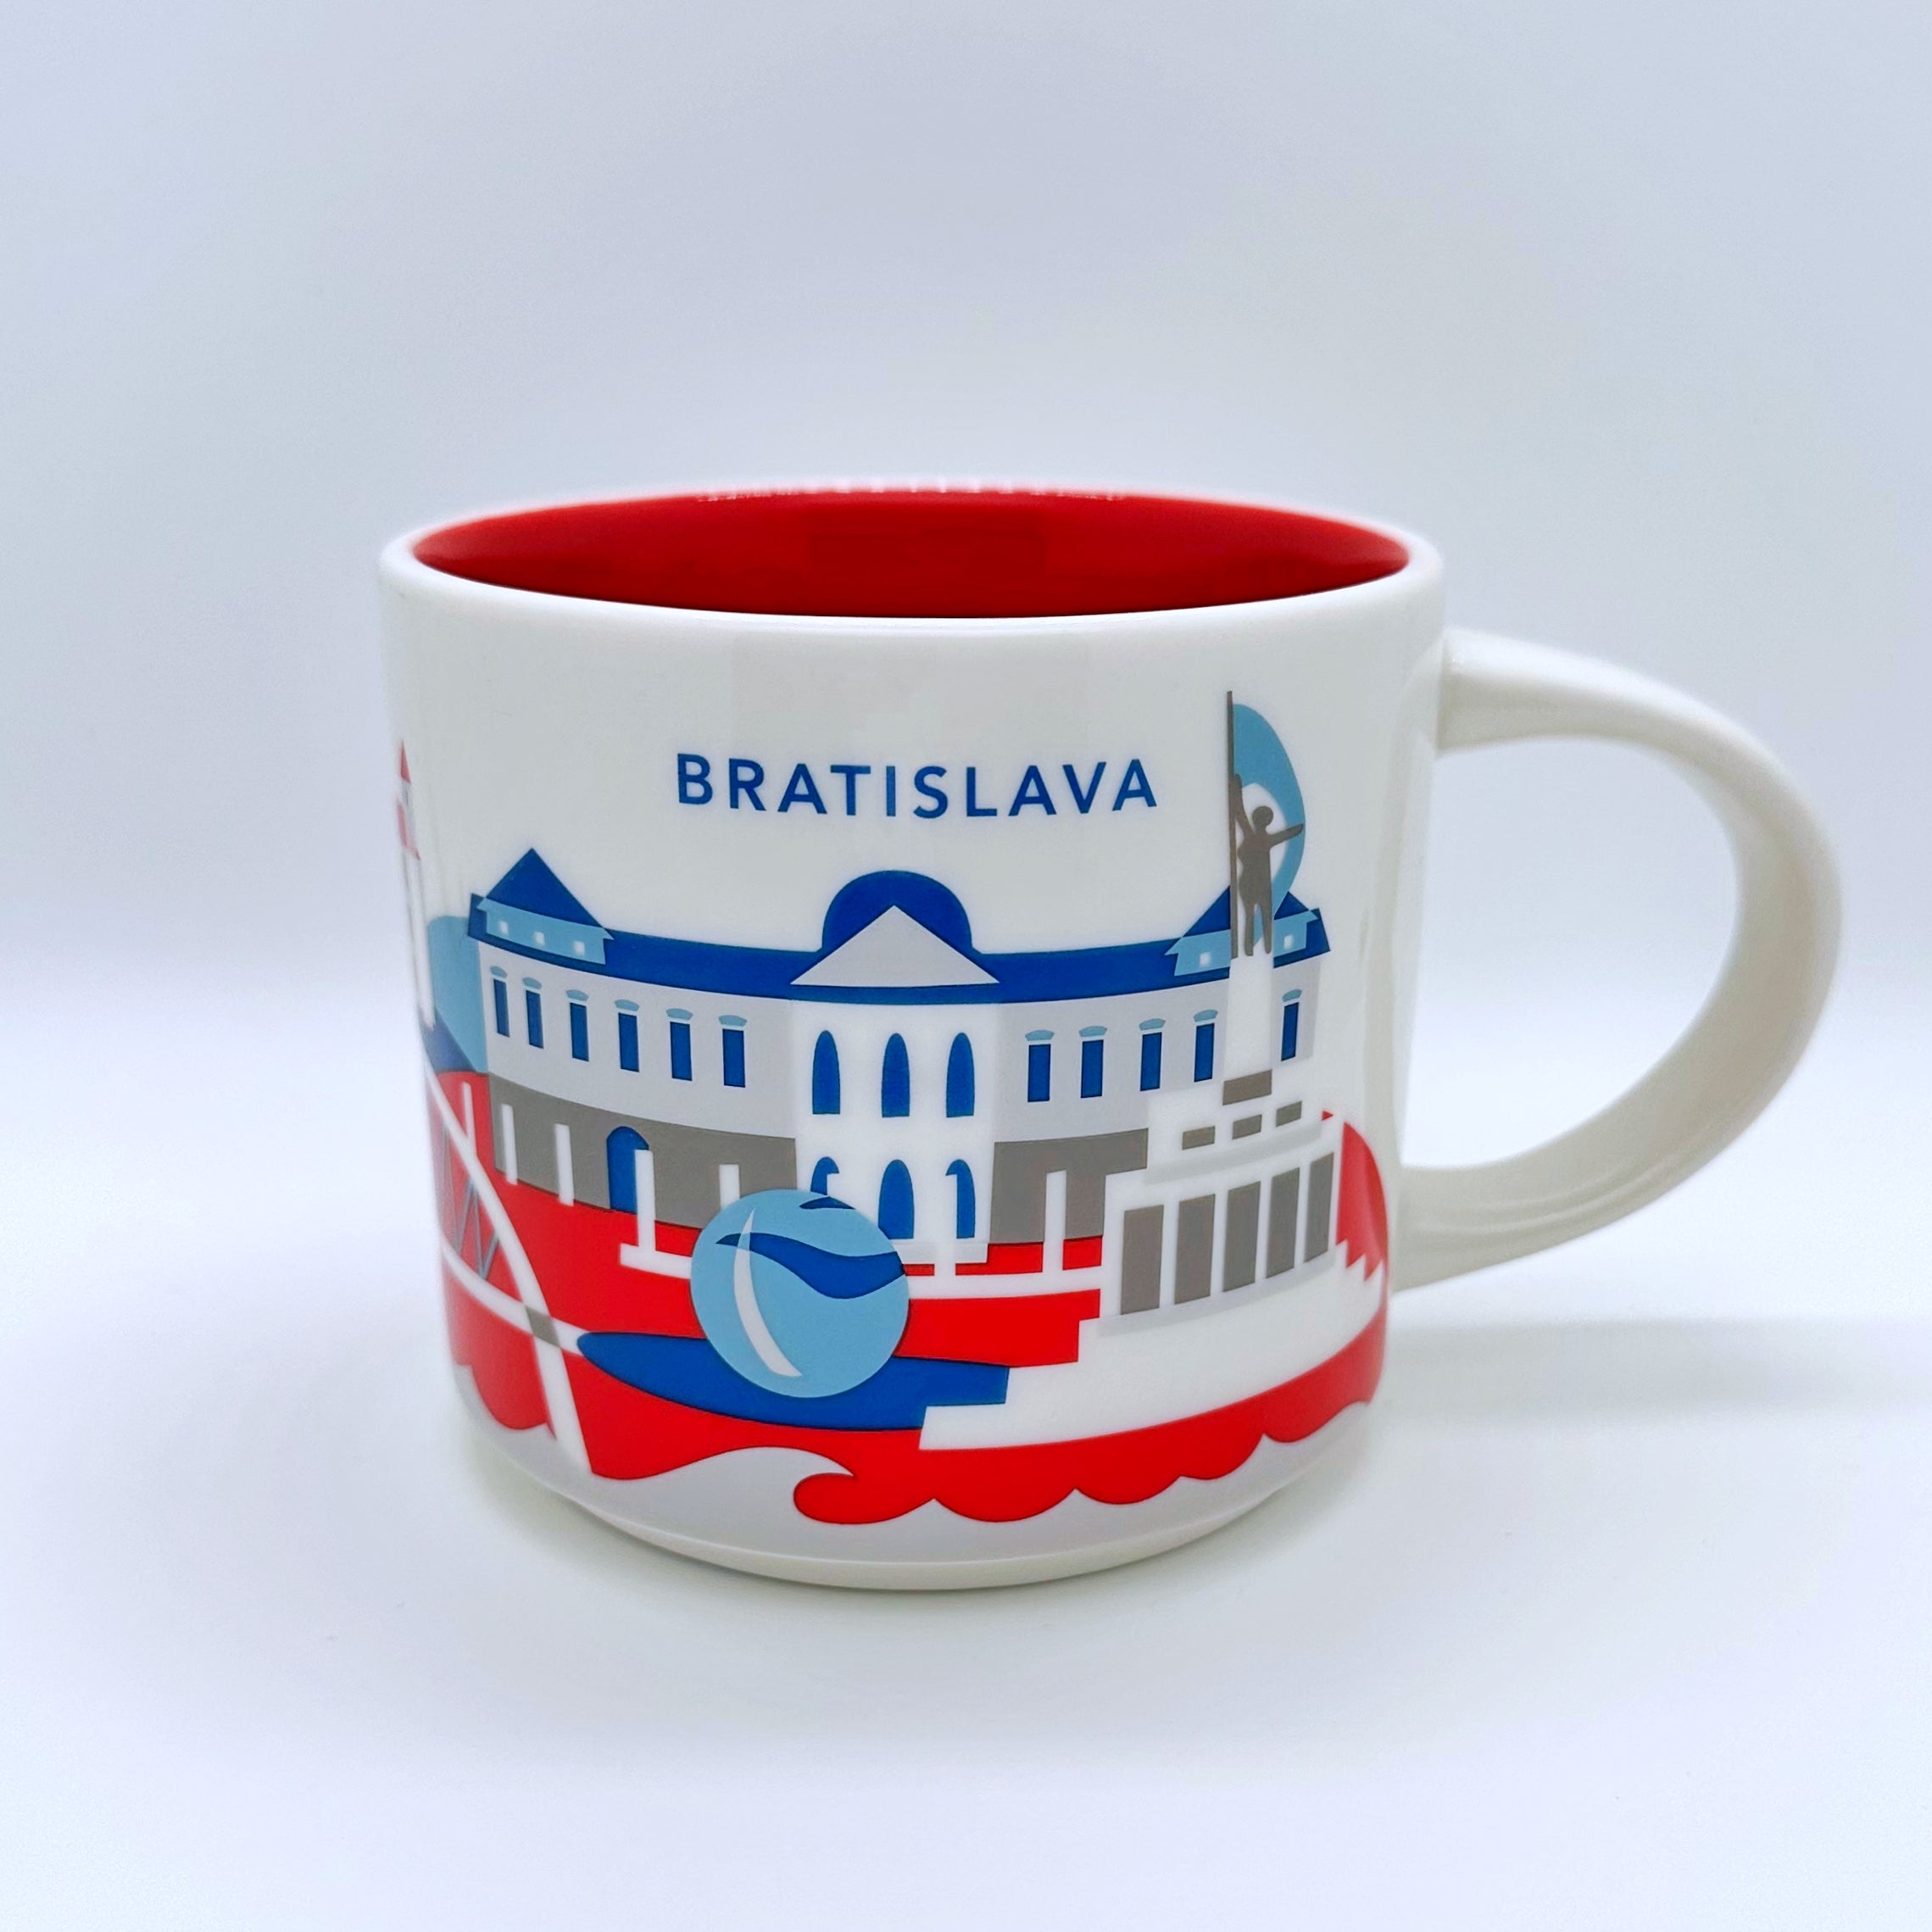 Kaffee Tee oder Cappuccino Tasse von Starbucks mit gemalten Bildern aus der Stadt Bratislava